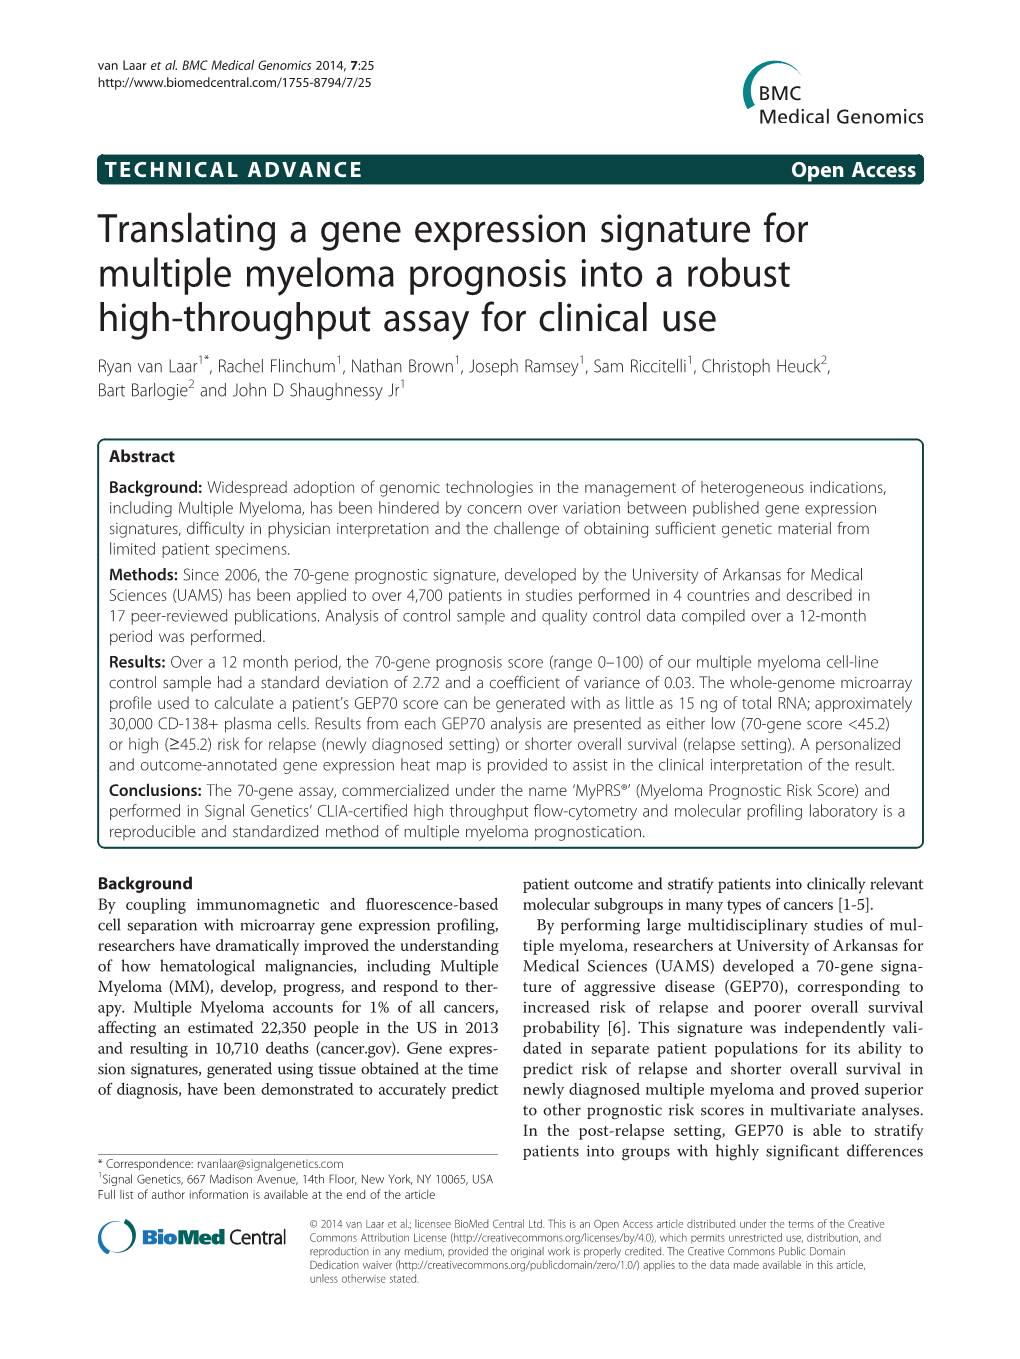 Translating a Gene Expression Signature for Multiple Myeloma